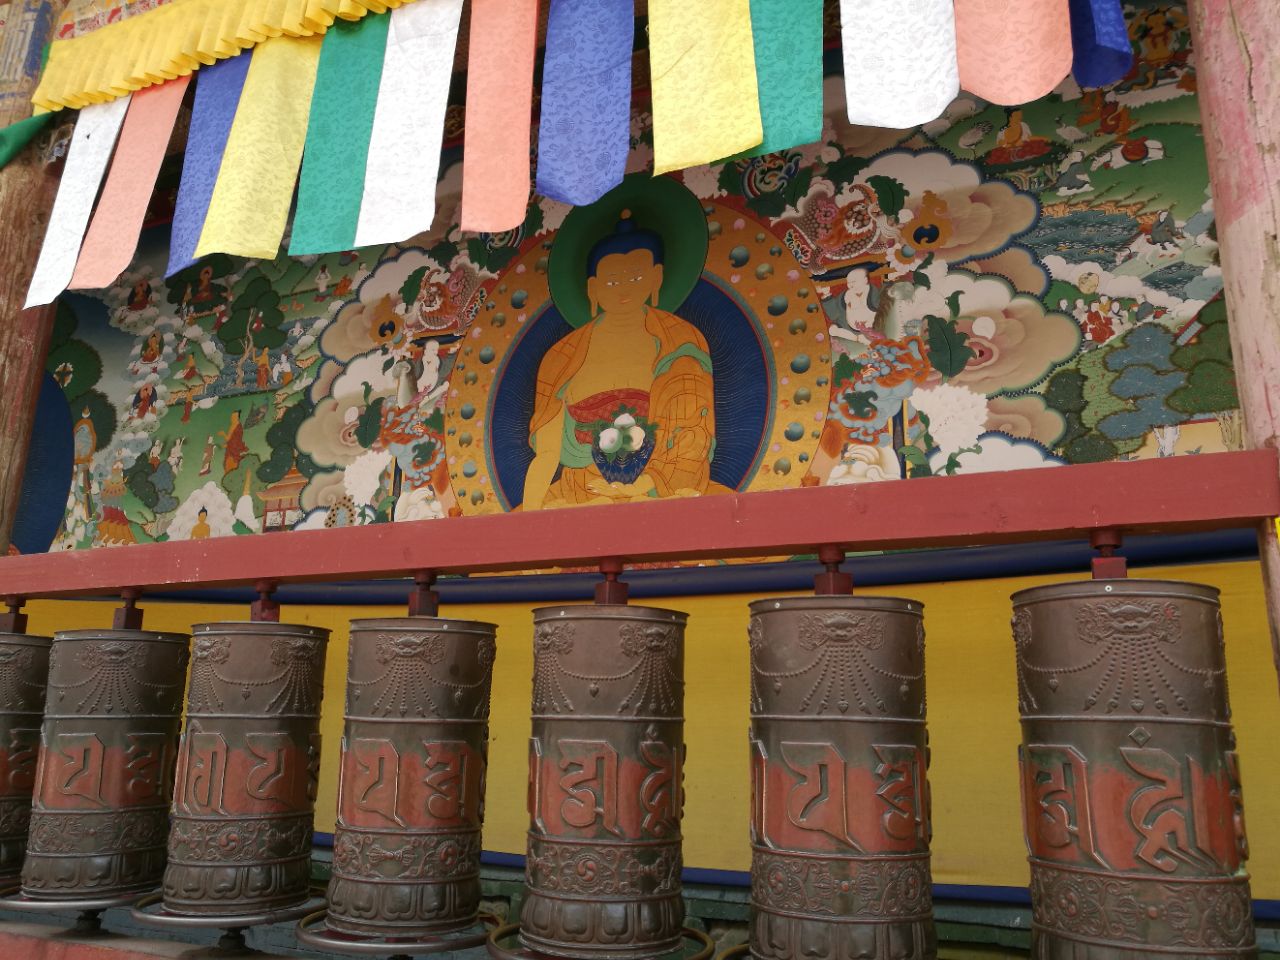 酥油花,壁画和堆绣被誉为"塔尔寺艺术三绝",另外寺内还珍藏了许多佛教